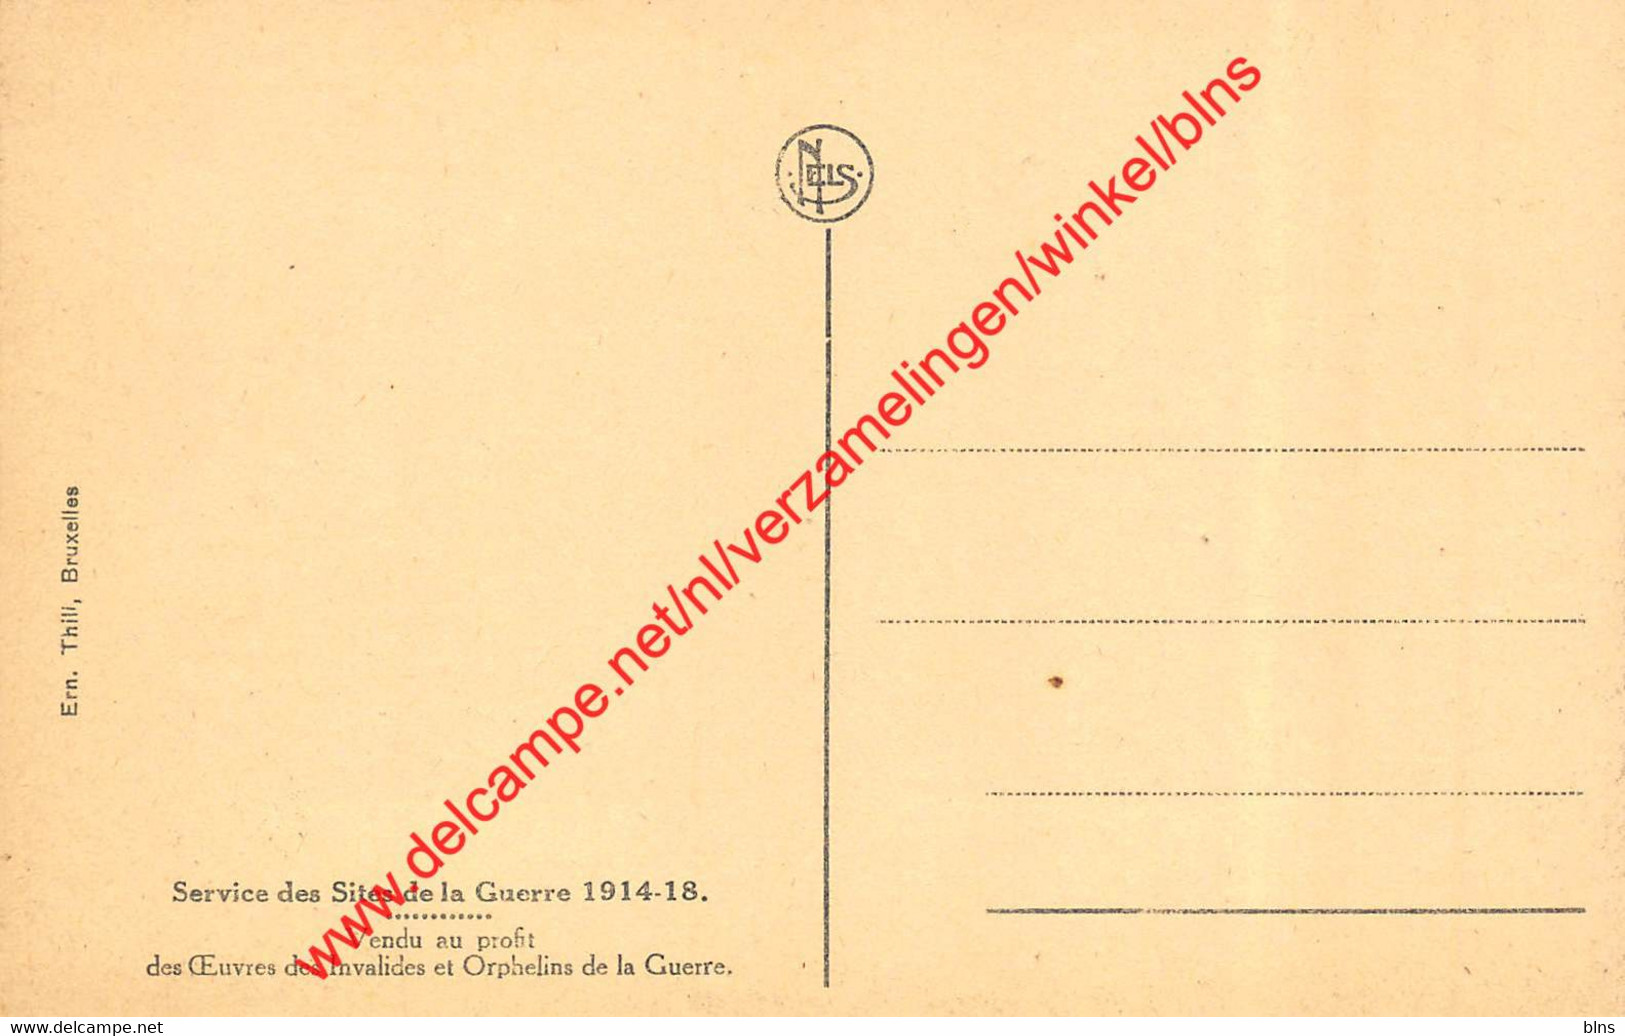 Tablier Du Pont De Chemin De Fer - 1914-1918 - Zeebrugge - Zeebrugge